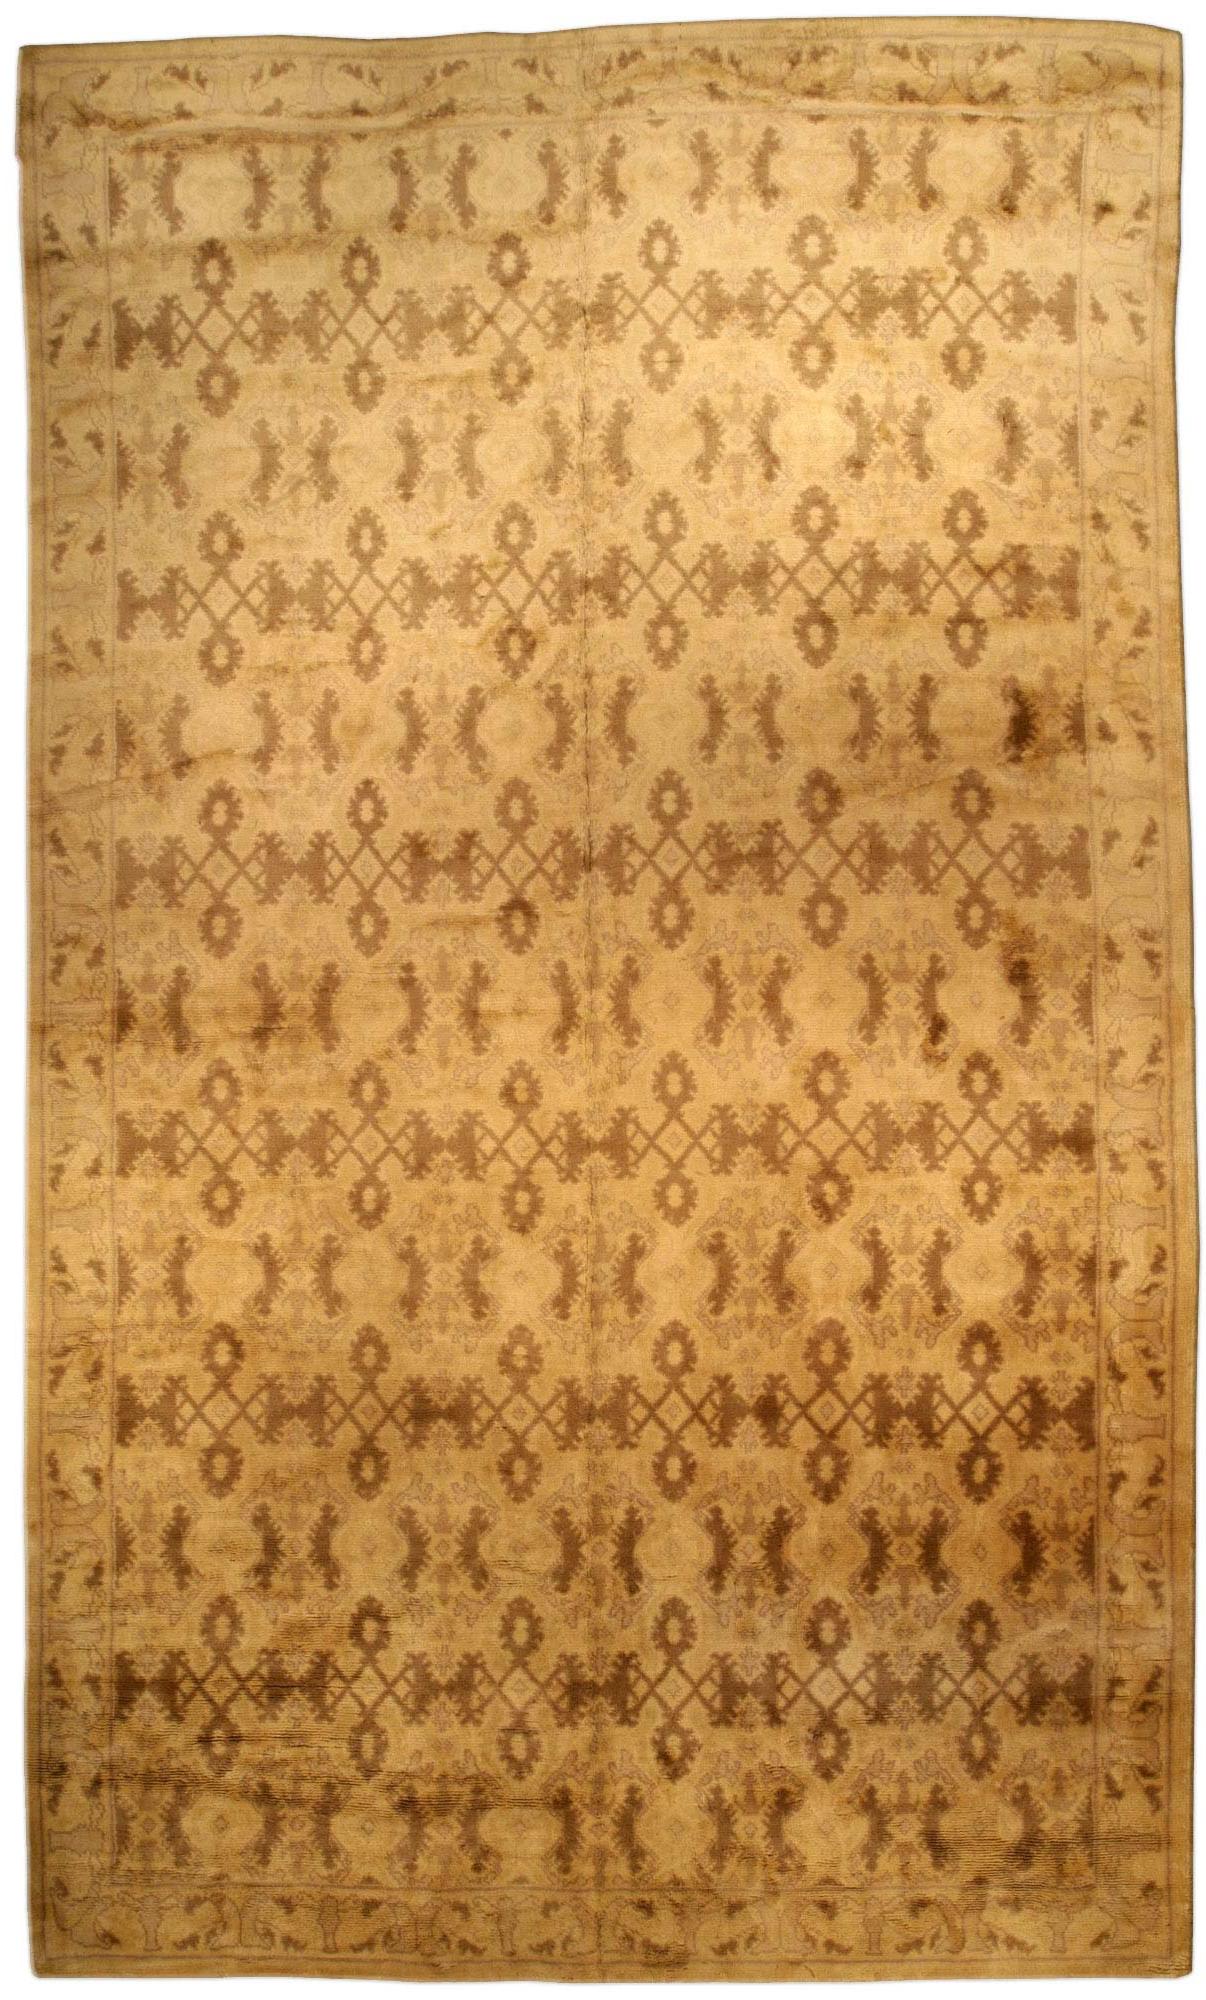 Vintage Spanish Beige Handmade Wool Rug For Sale